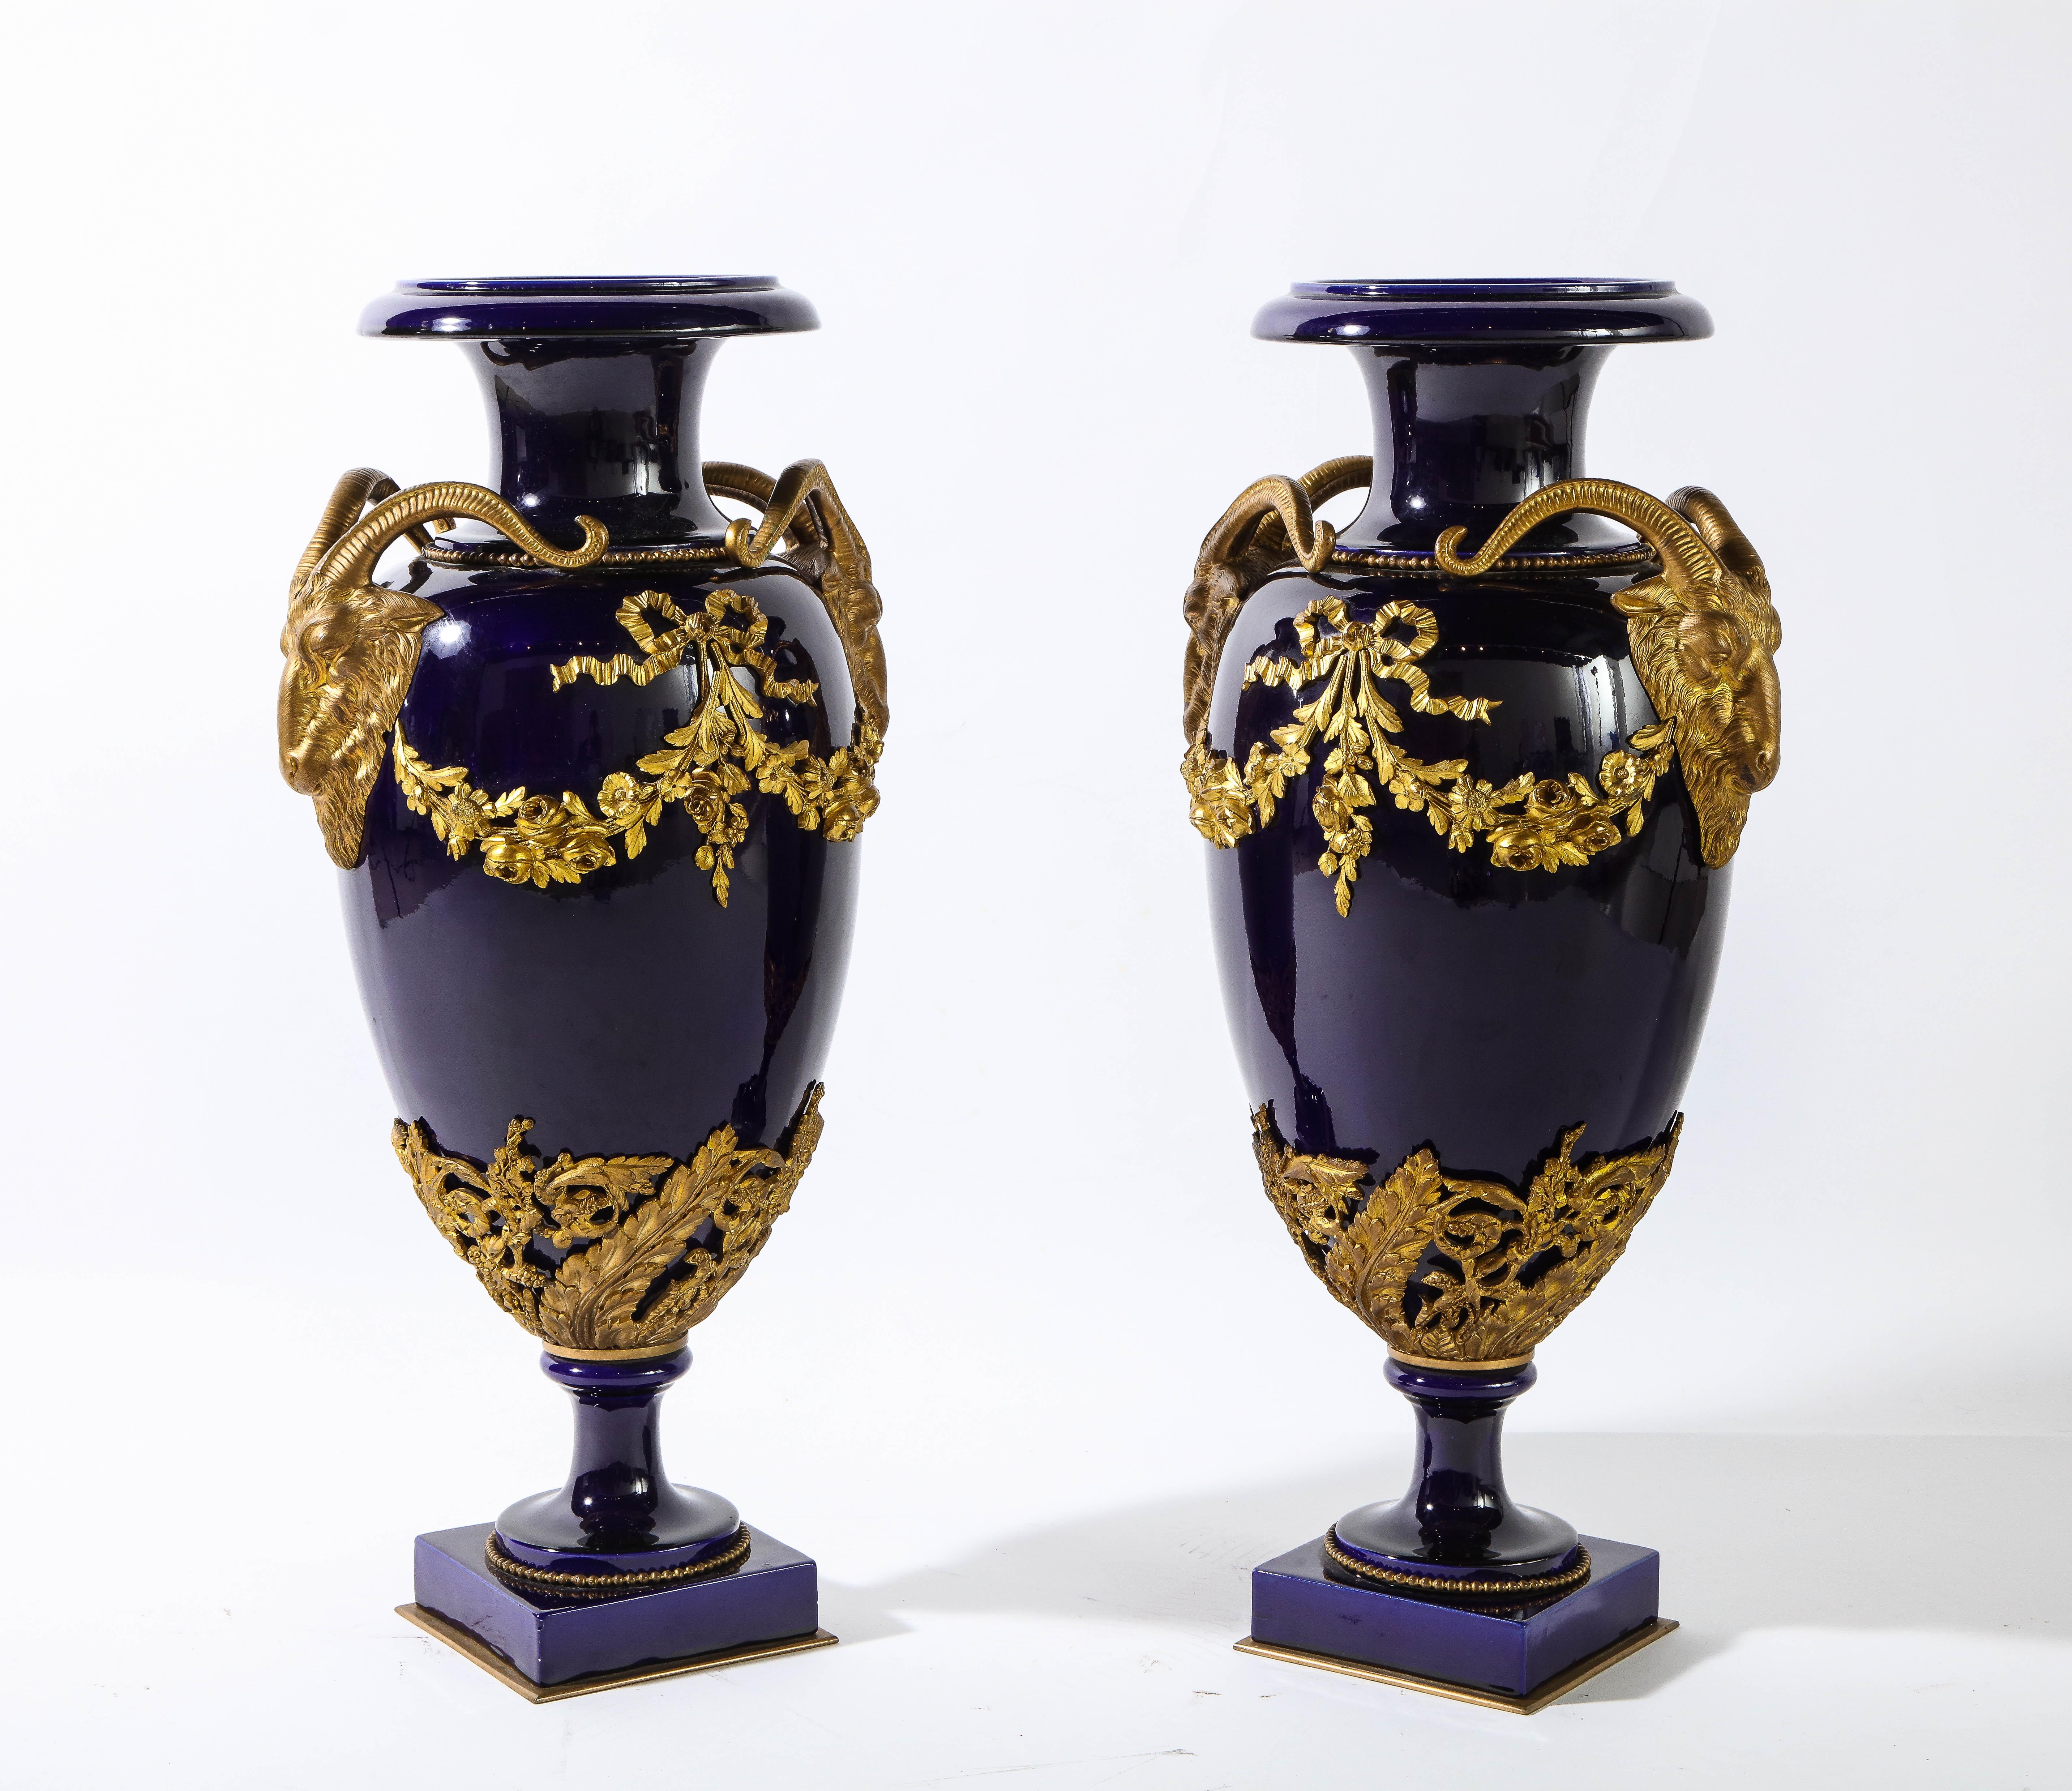 Paire de grands vases anciens de style Louis XVI Sèvres en porcelaine bleu cobalt et bronze doré avec couronnes, fleurs et rubans, flanqués à chaque extrémité d'une paire d'anses en forme de tête de bélier. Cette fabuleuse paire de vases en